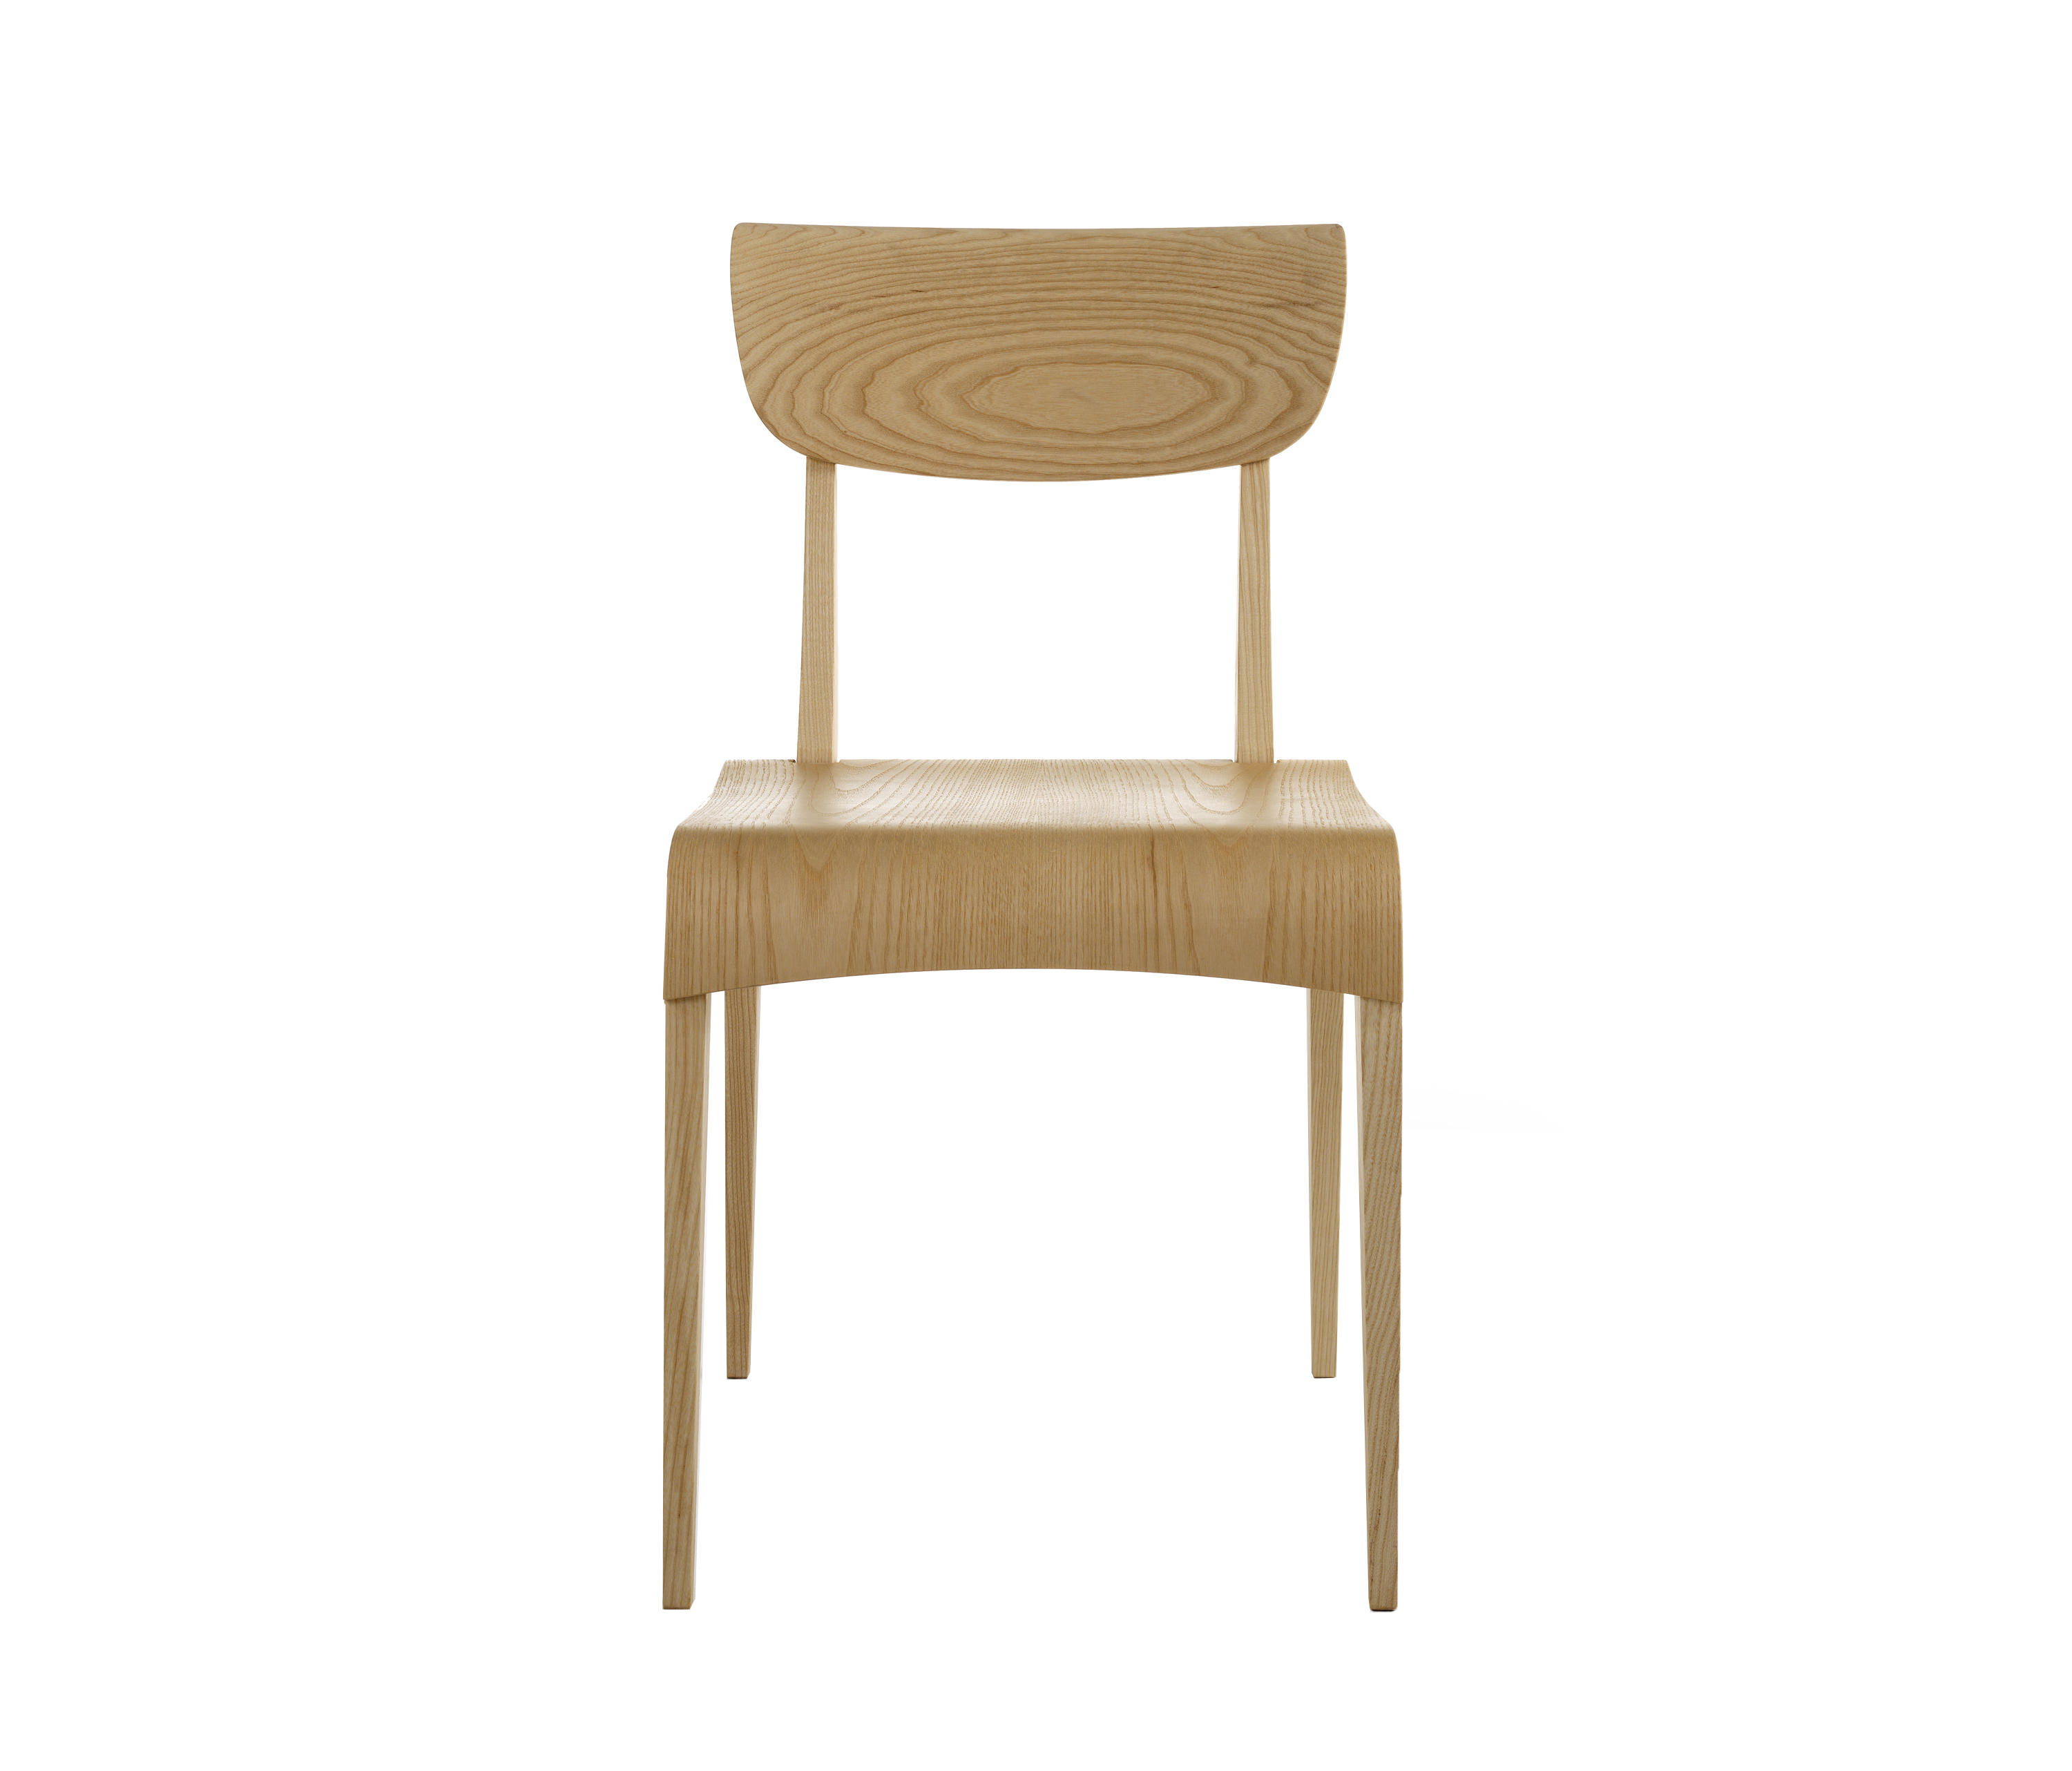 Oscarina Chairs From Atanor Architonic